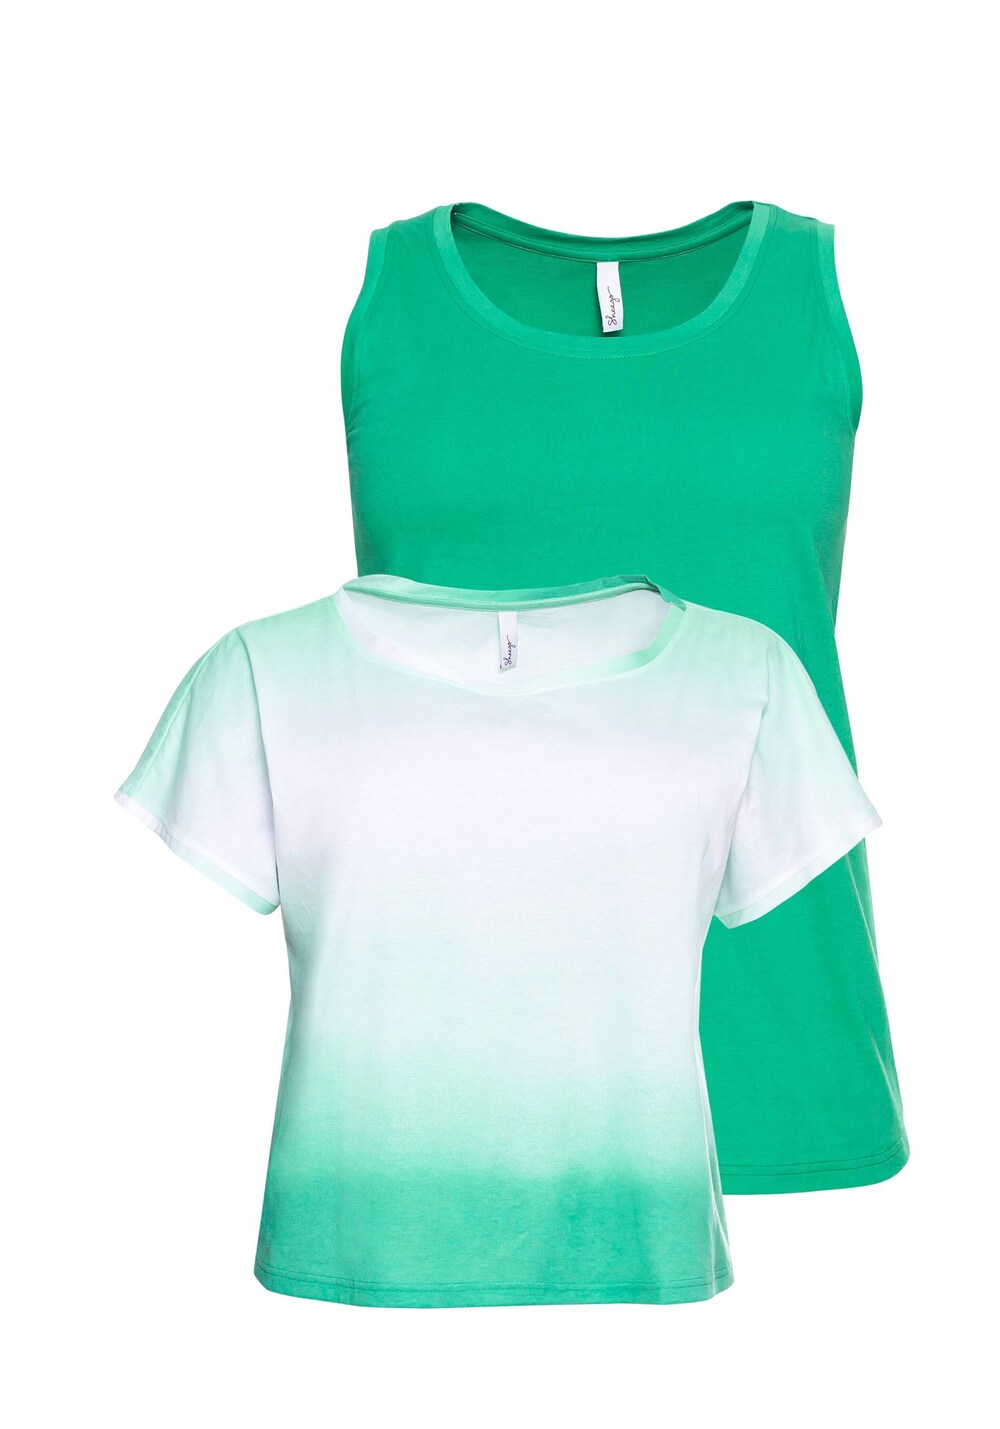 Рубашка Sheego, зеленый/мятный/пастельно-зеленый